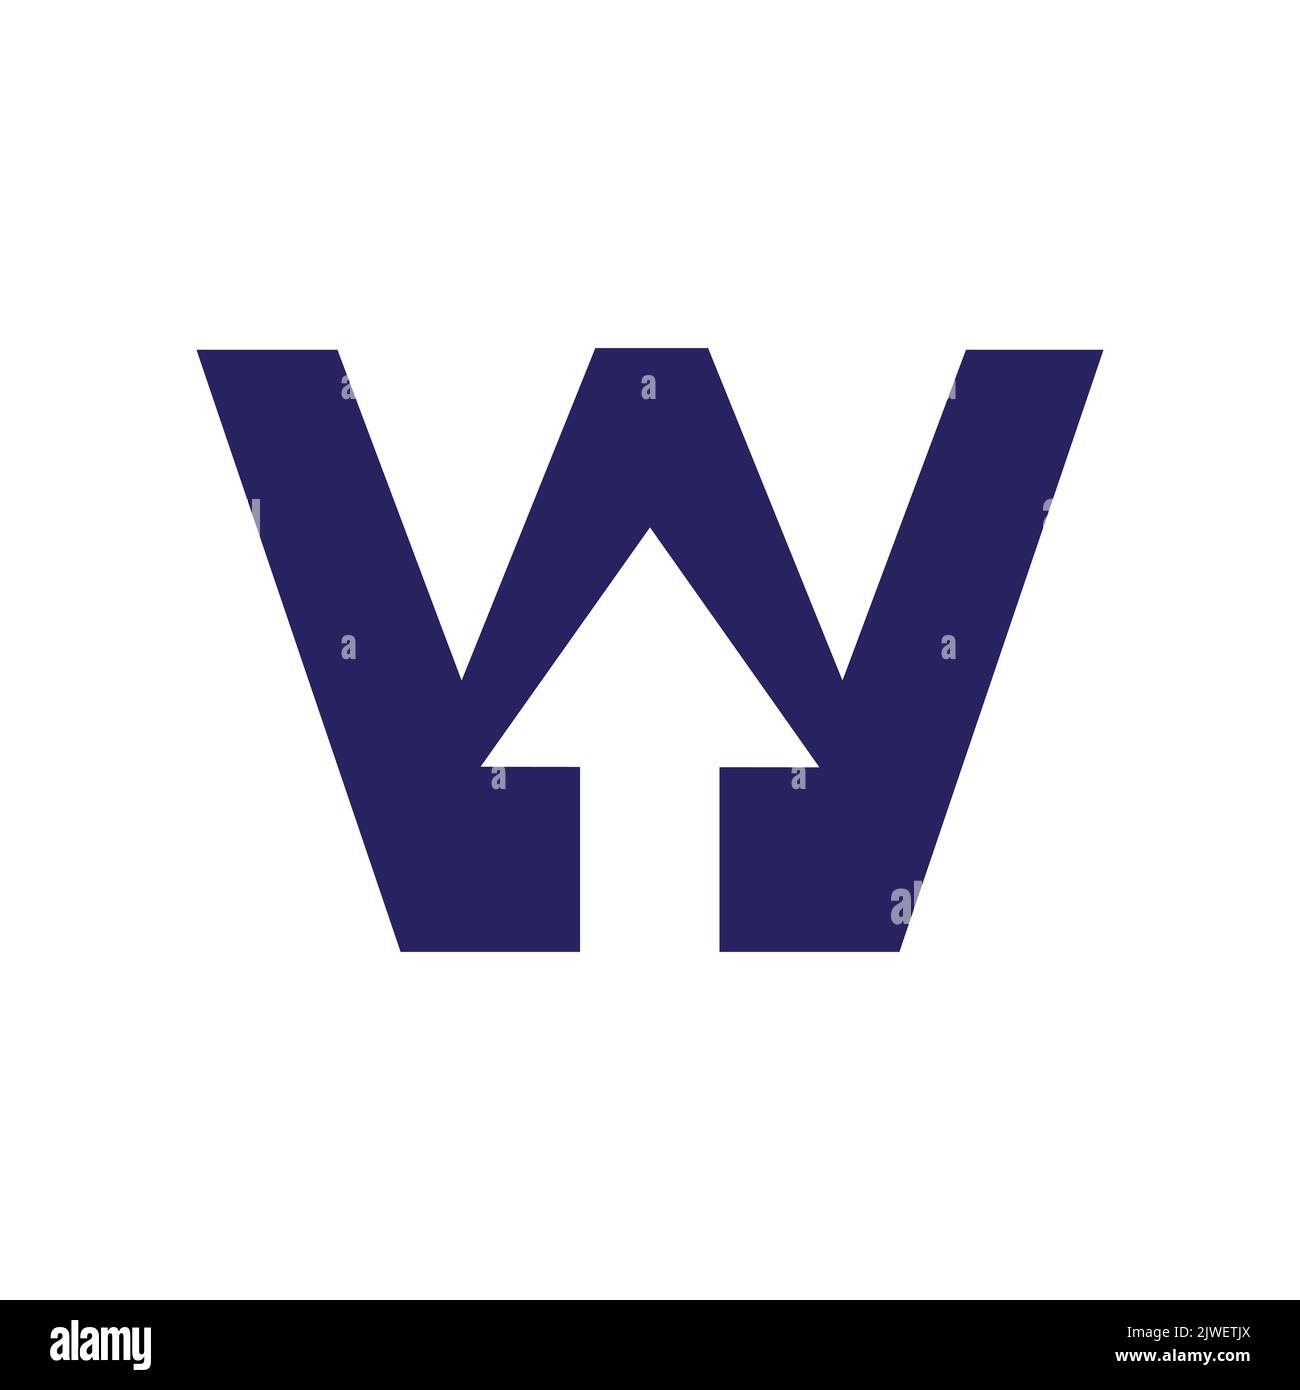 Logo financier lettre W avec flèche de croissance. Elément comptable, modèle de vecteur de symbole d'investissement financier Illustration de Vecteur